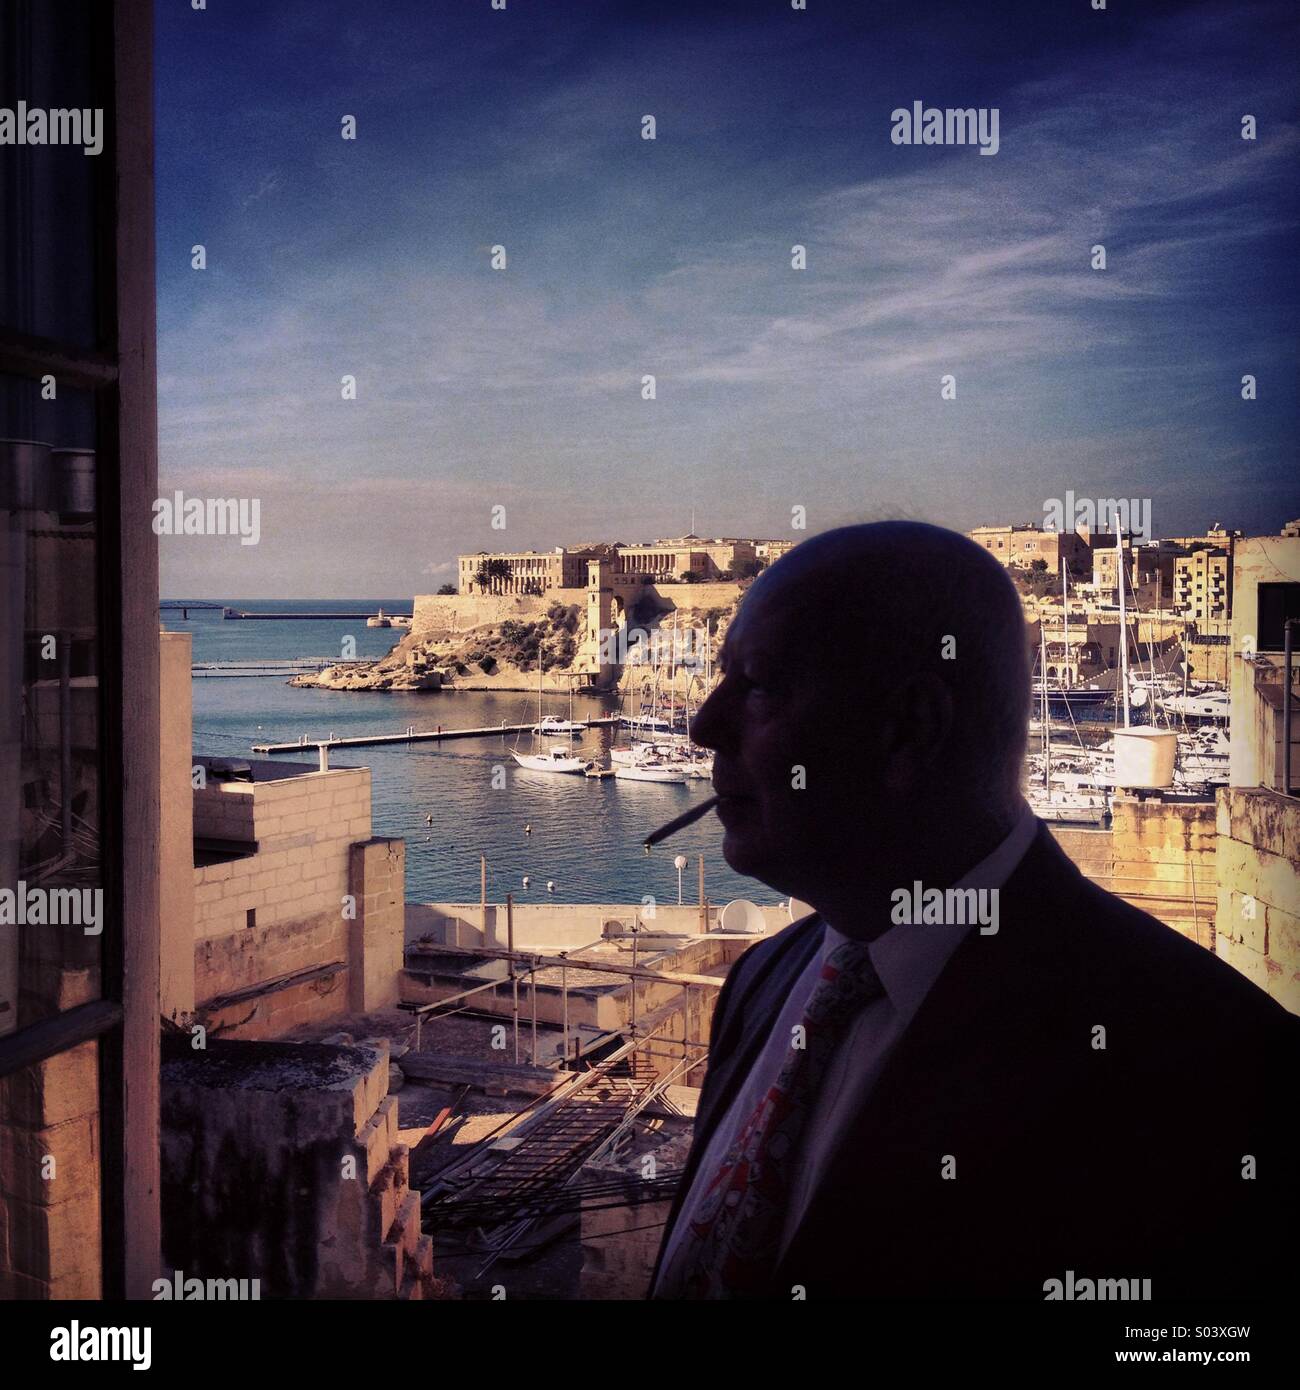 Man smoking at open window, overlooking Grand Harbour, Valletta, Malta Stock Photo